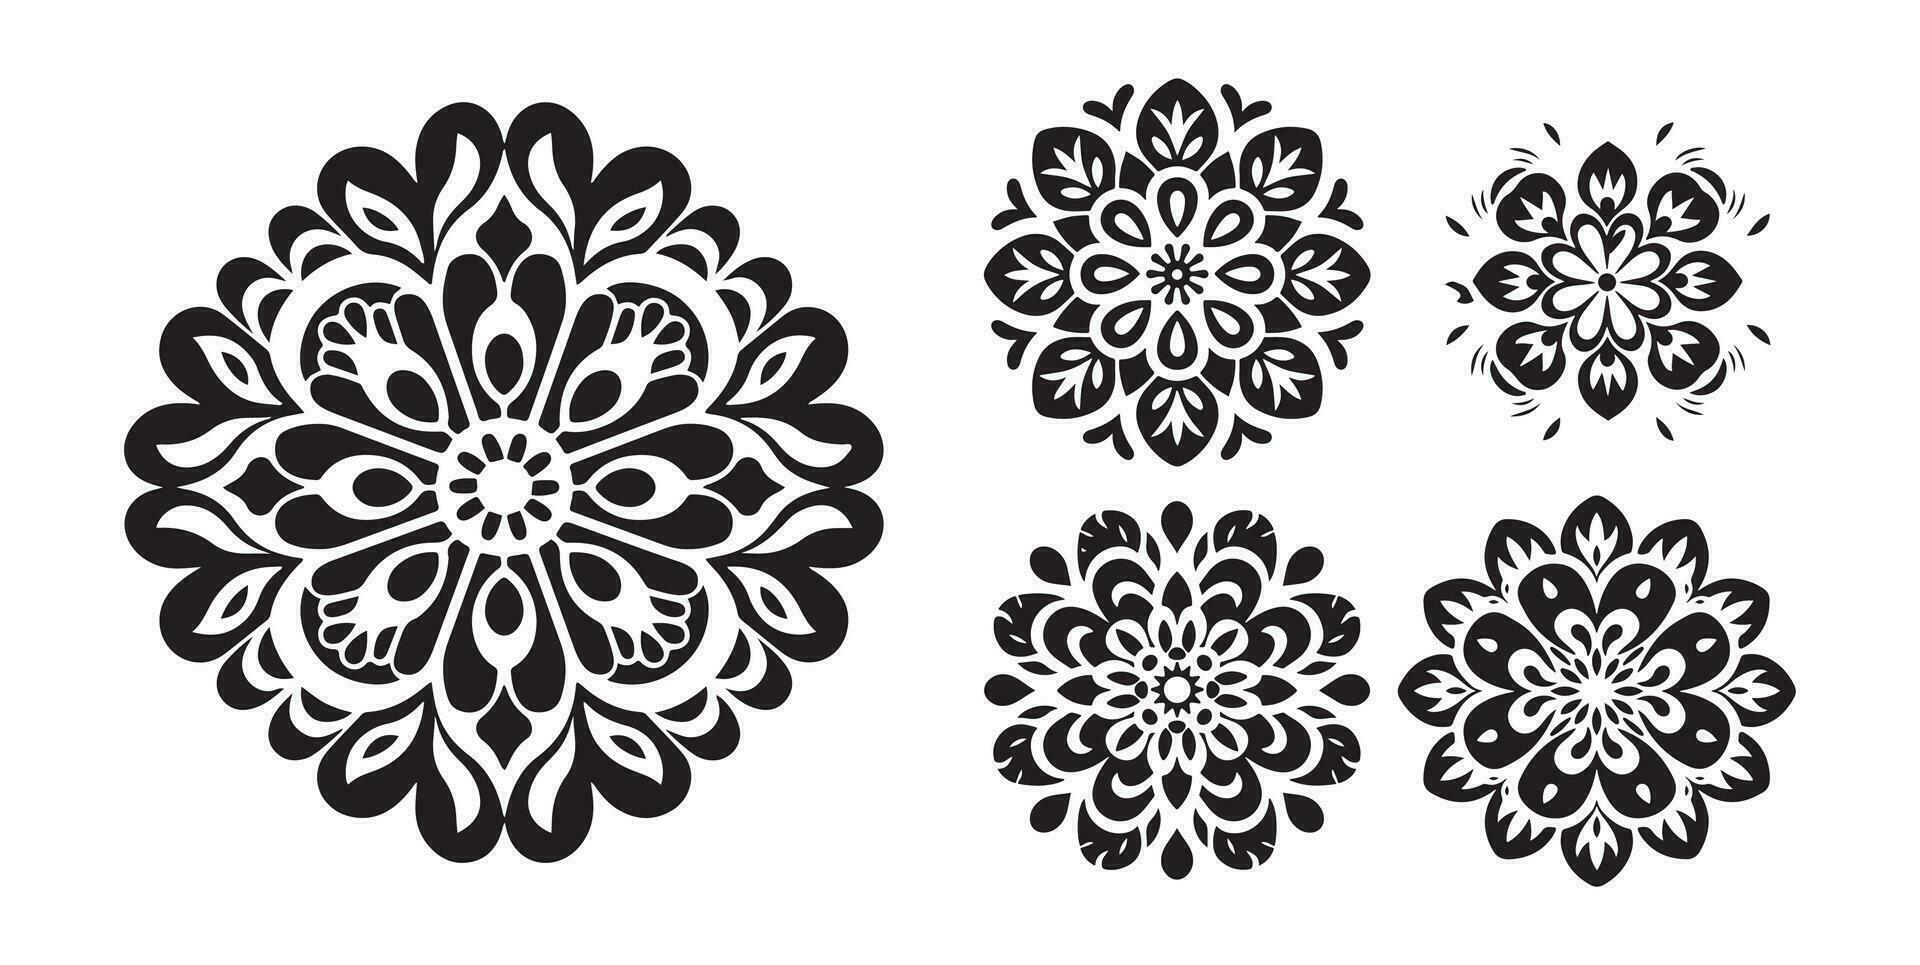 tradicional ucranio floral Arábica, negro y blanco flor icono clipart, en el estilo de Víctor Vasarely vector